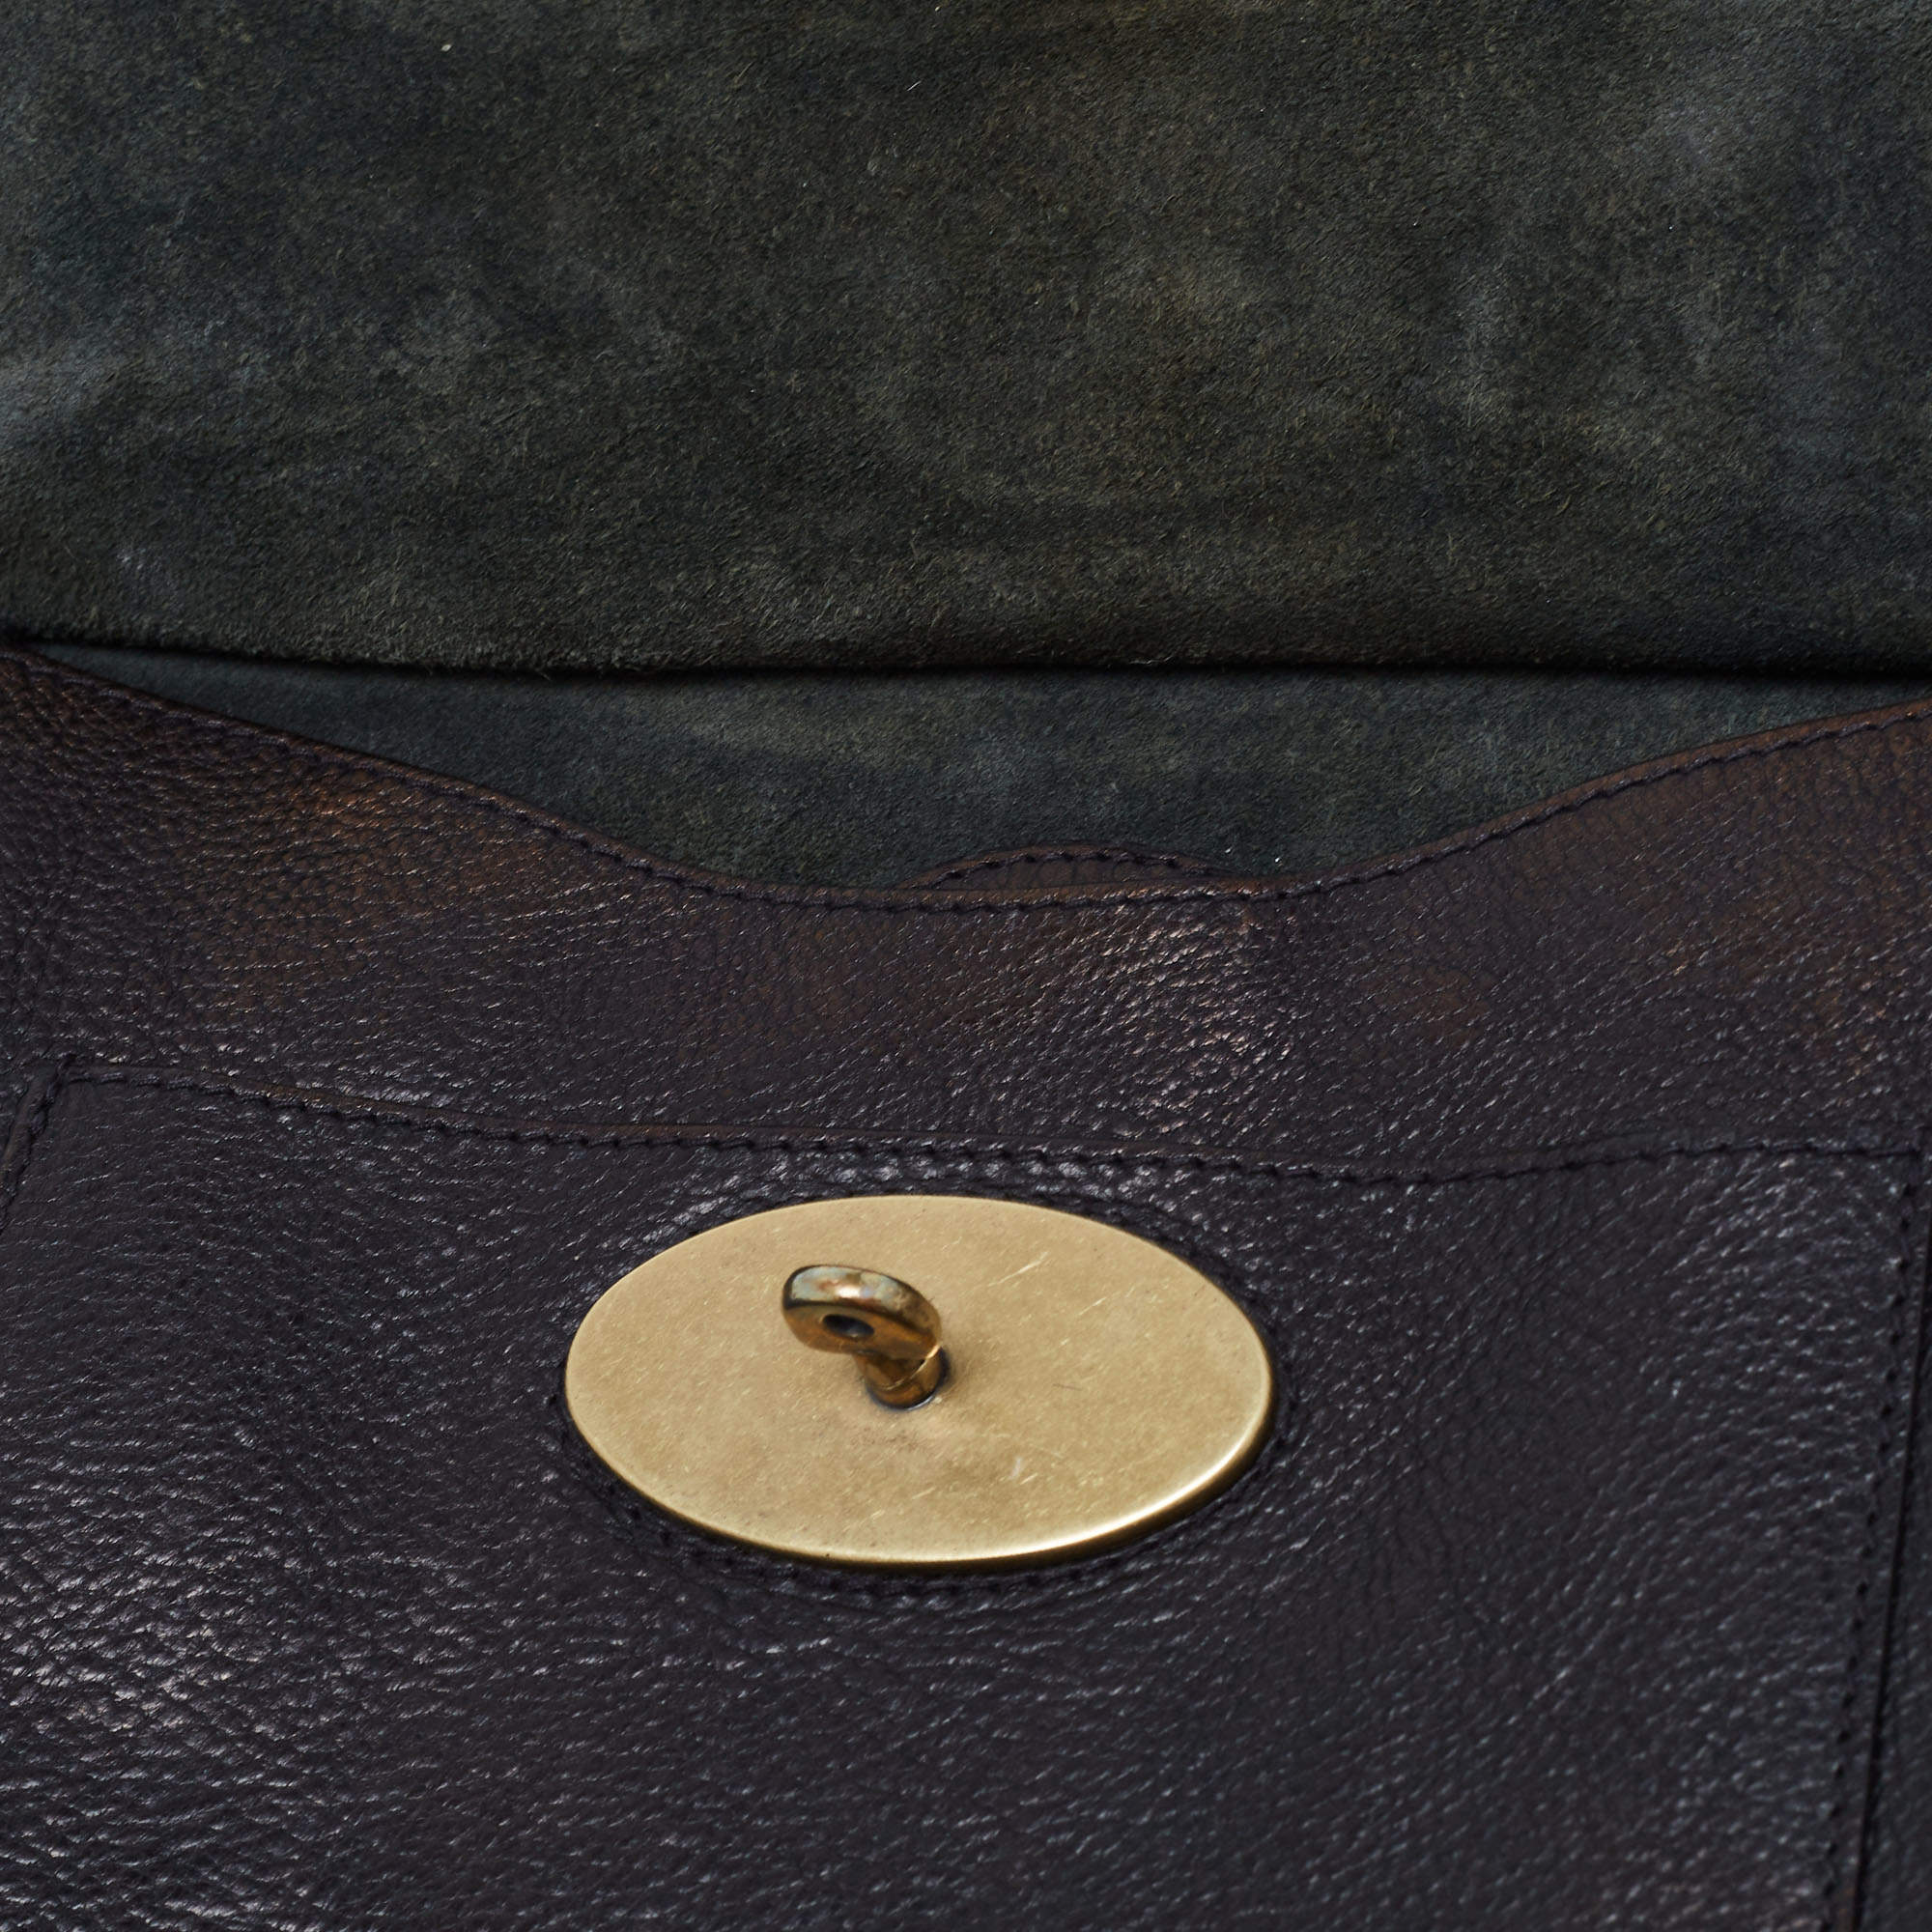 LOT:2188  Mulberry Antony Messenger cross body handbag in black le